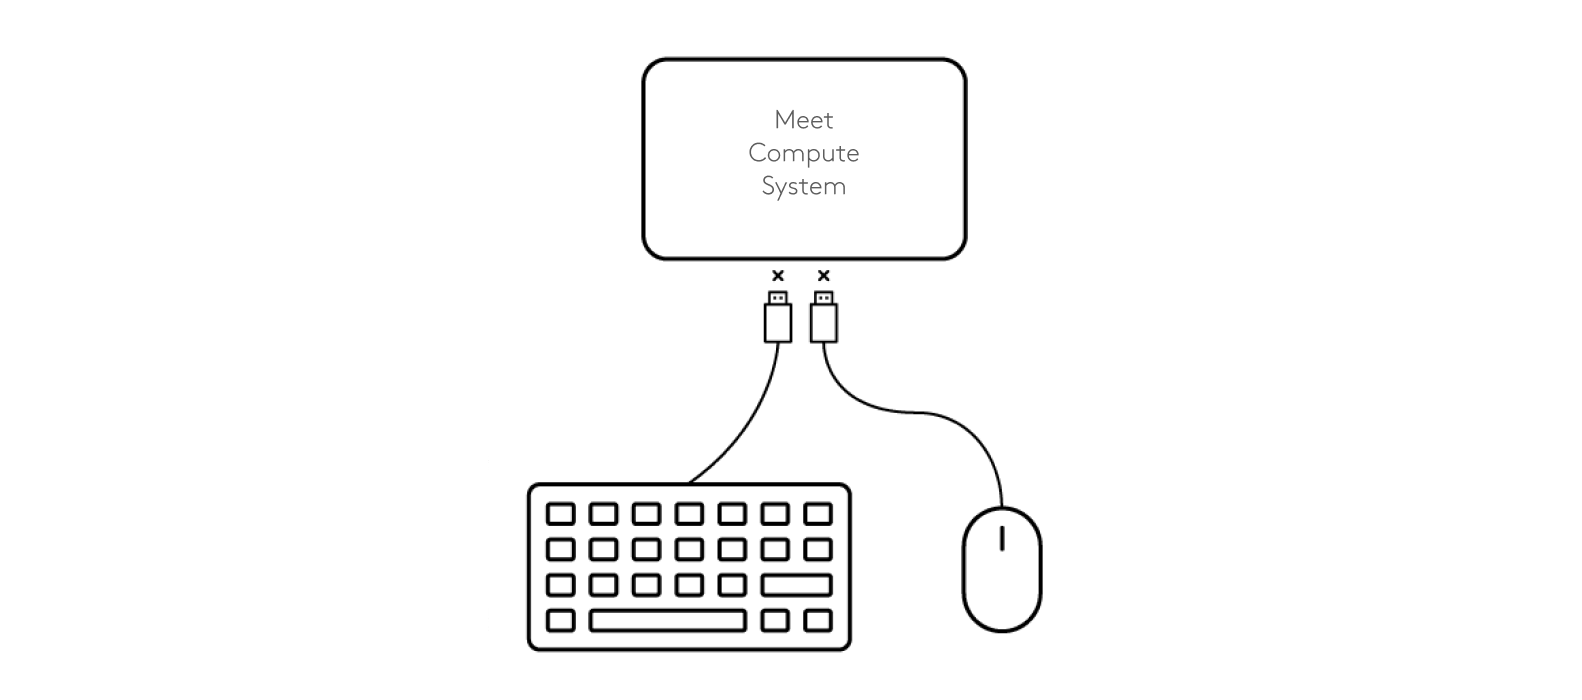 Diagram memutuskan koneksi keyboard dan mouse ke Sistem Komputasi Meet